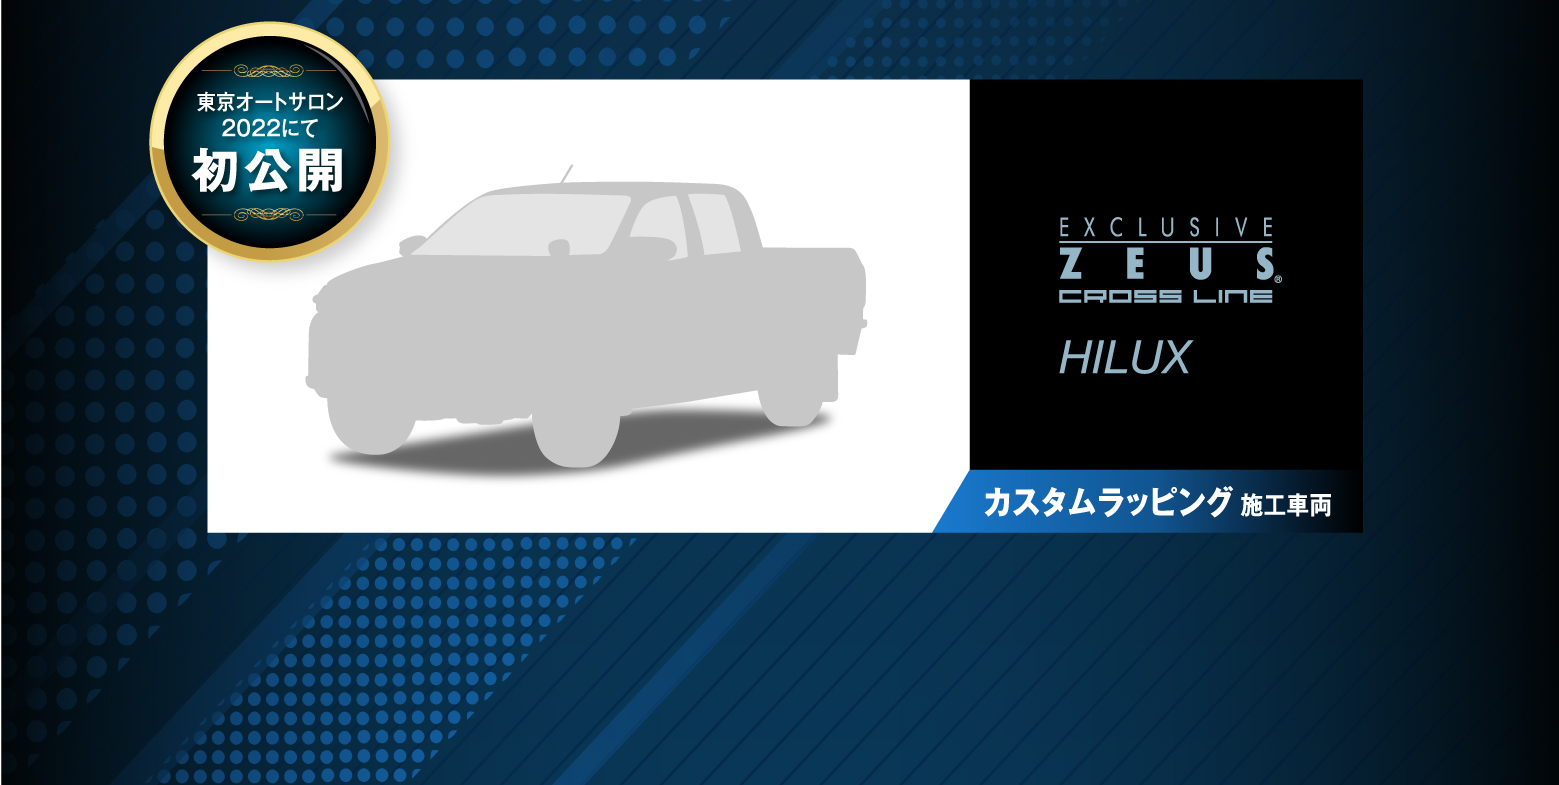 東京オートサロン2022にて初公開 EXCLUSIVE ZEUS CROSS LINE HILUX カスタムラッピング施工車両